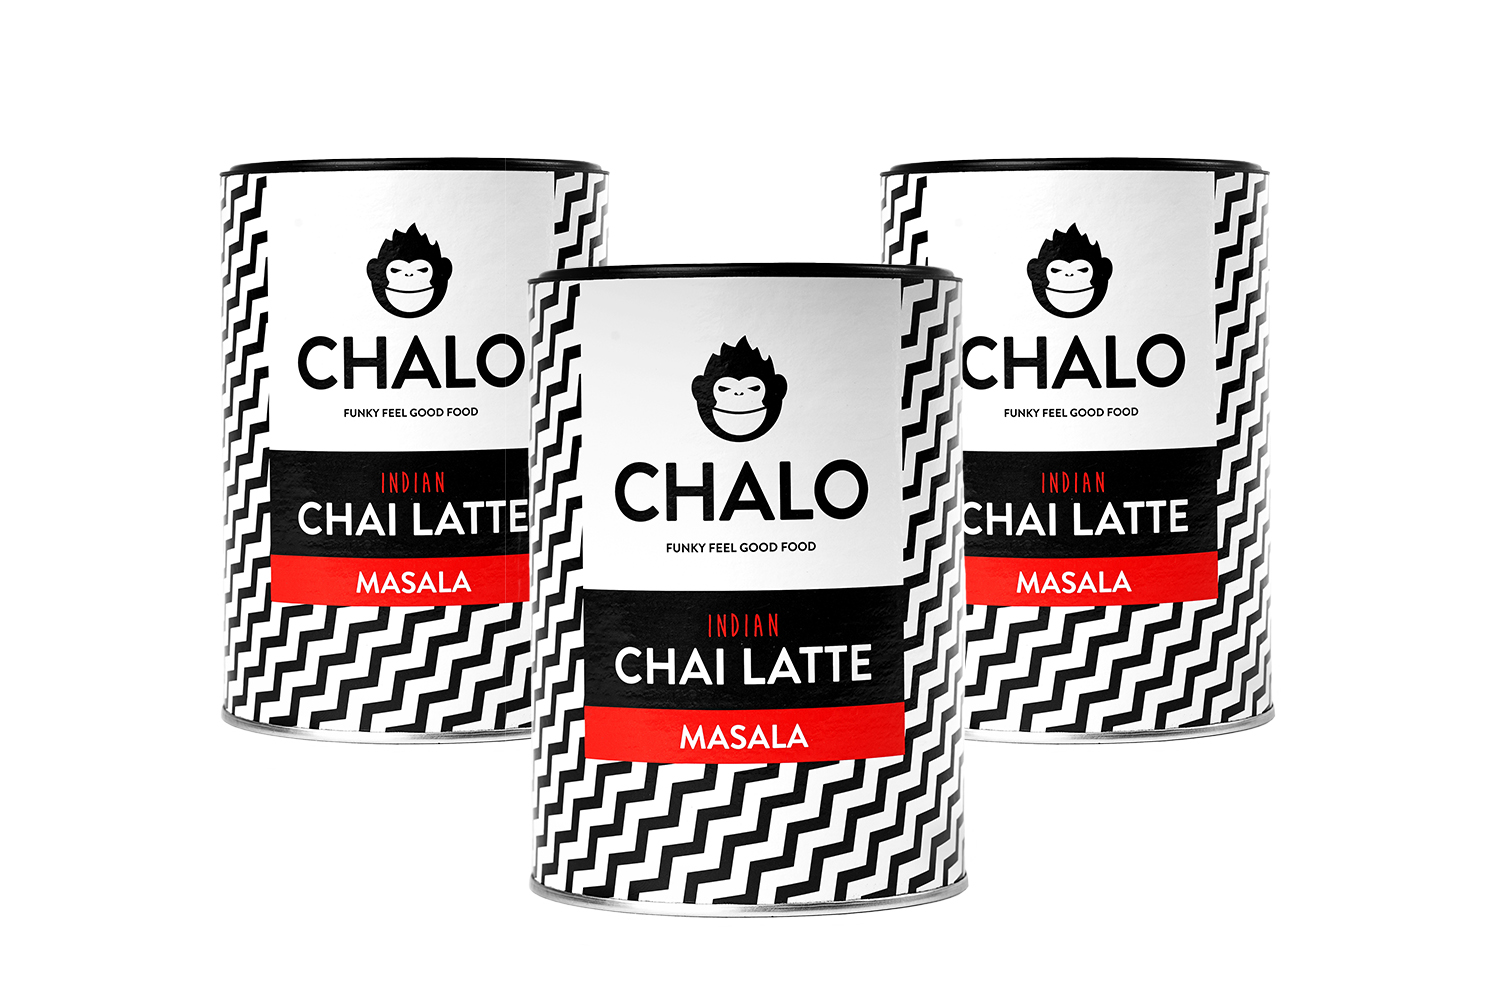 The Chai poudre masala CHALO 300 grs-NOS CHAI ET THÉS